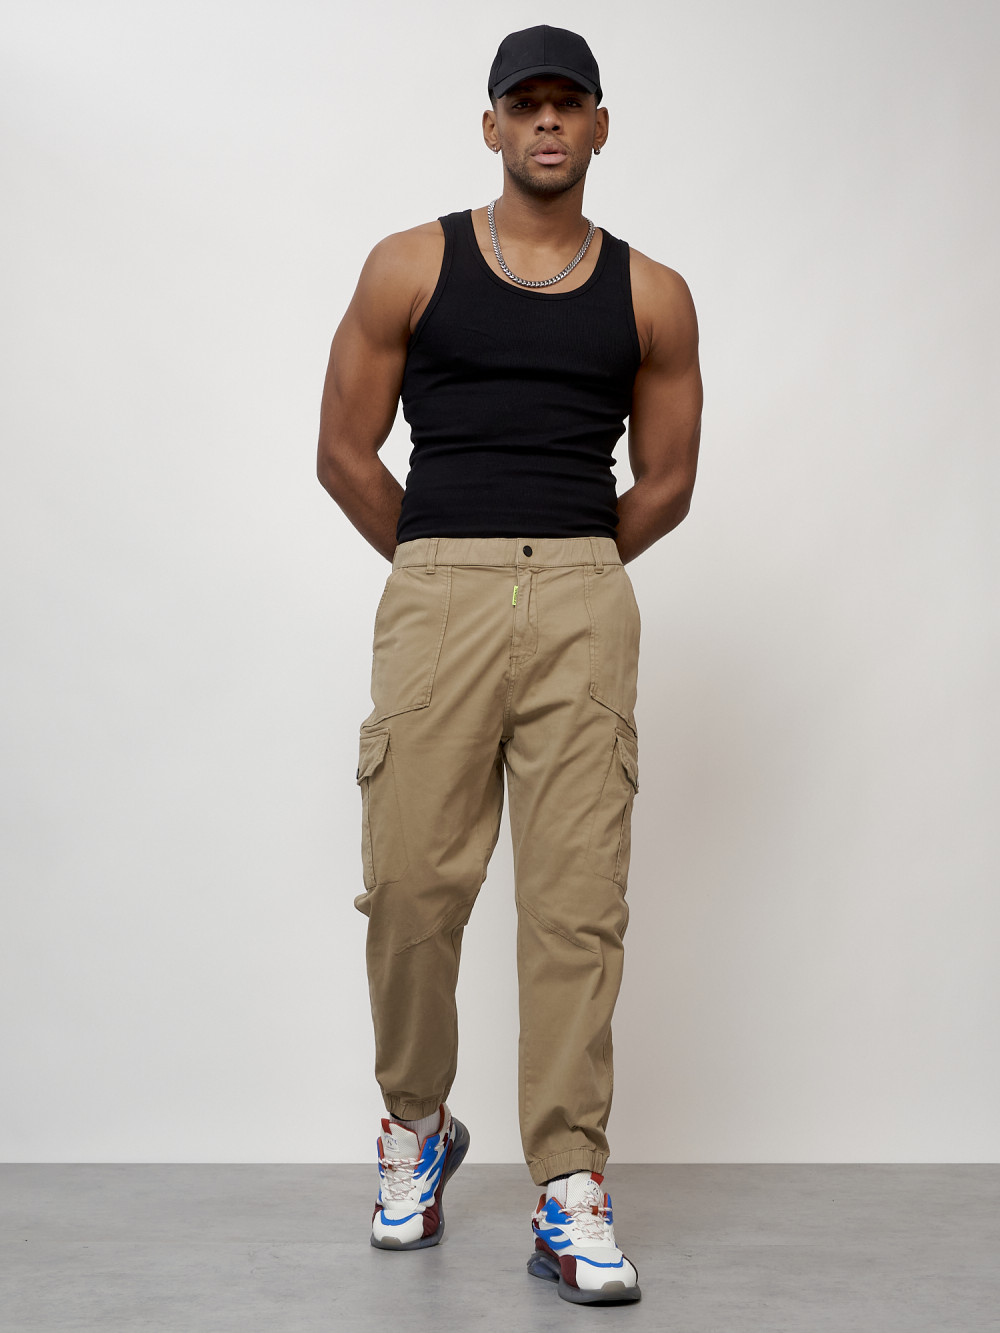 Джинсы карго мужские с накладными карманами бежевого цвета 2422B